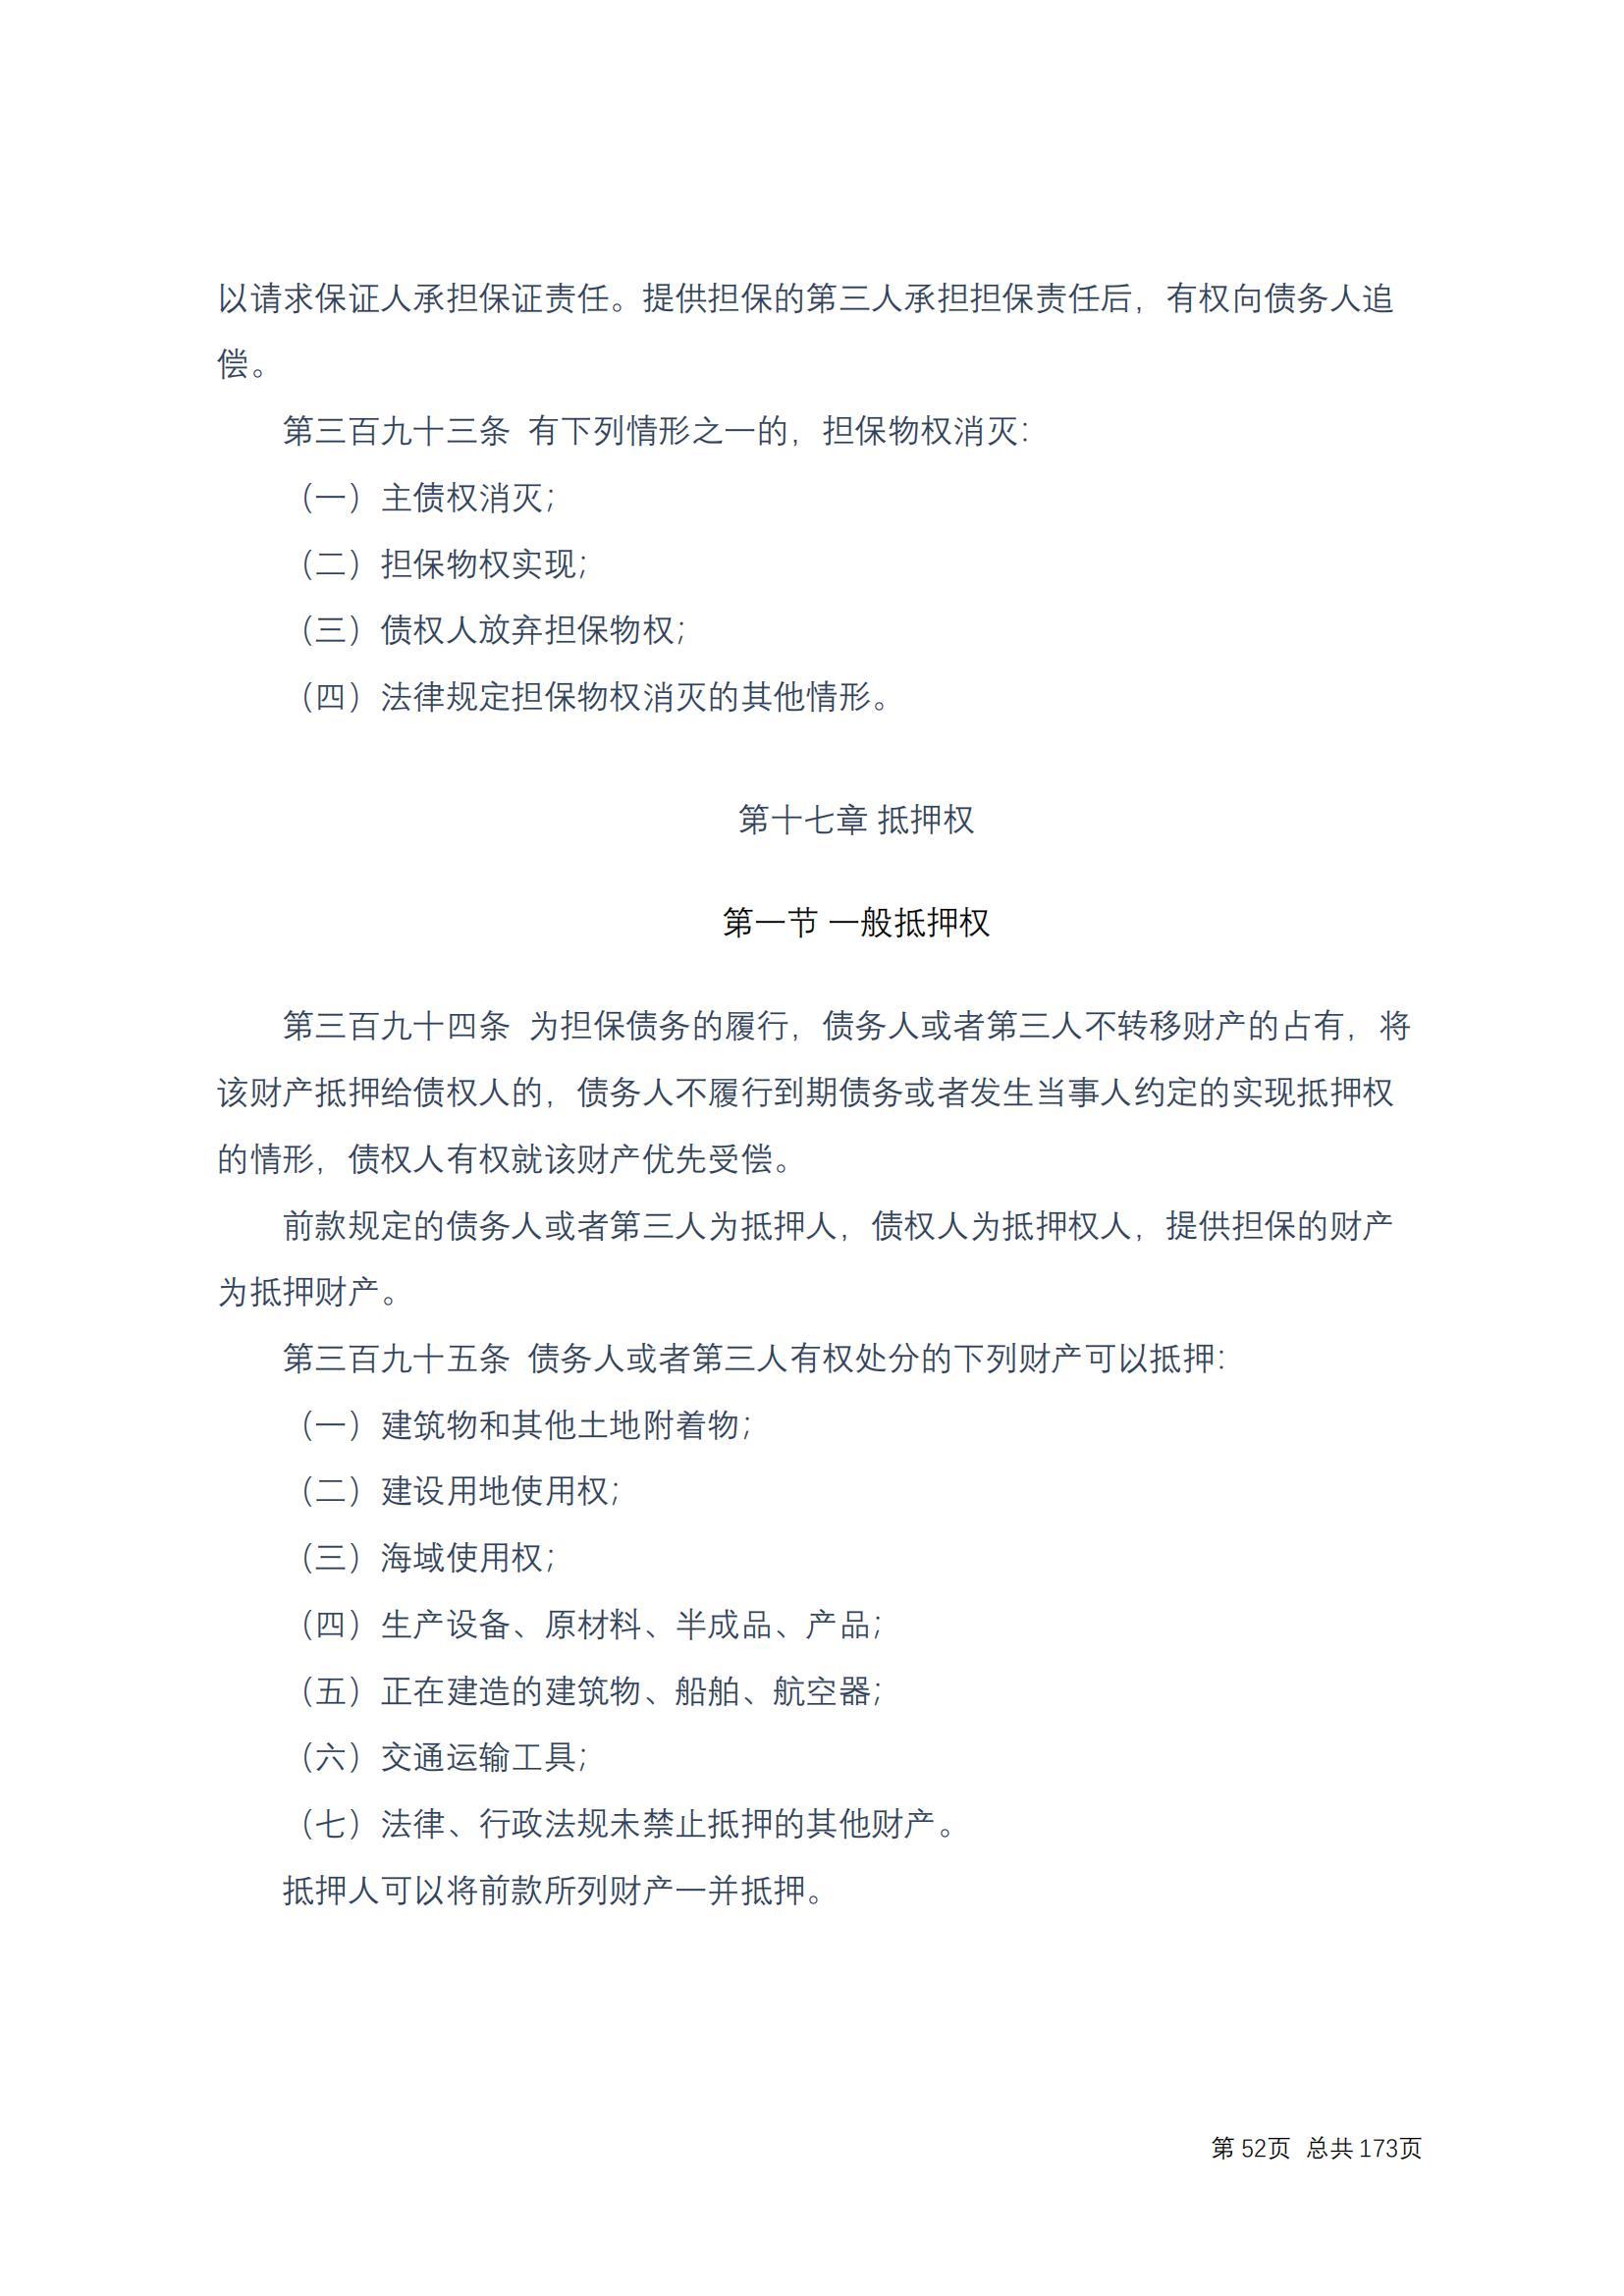 中华人民共和国民法典 修改过_51